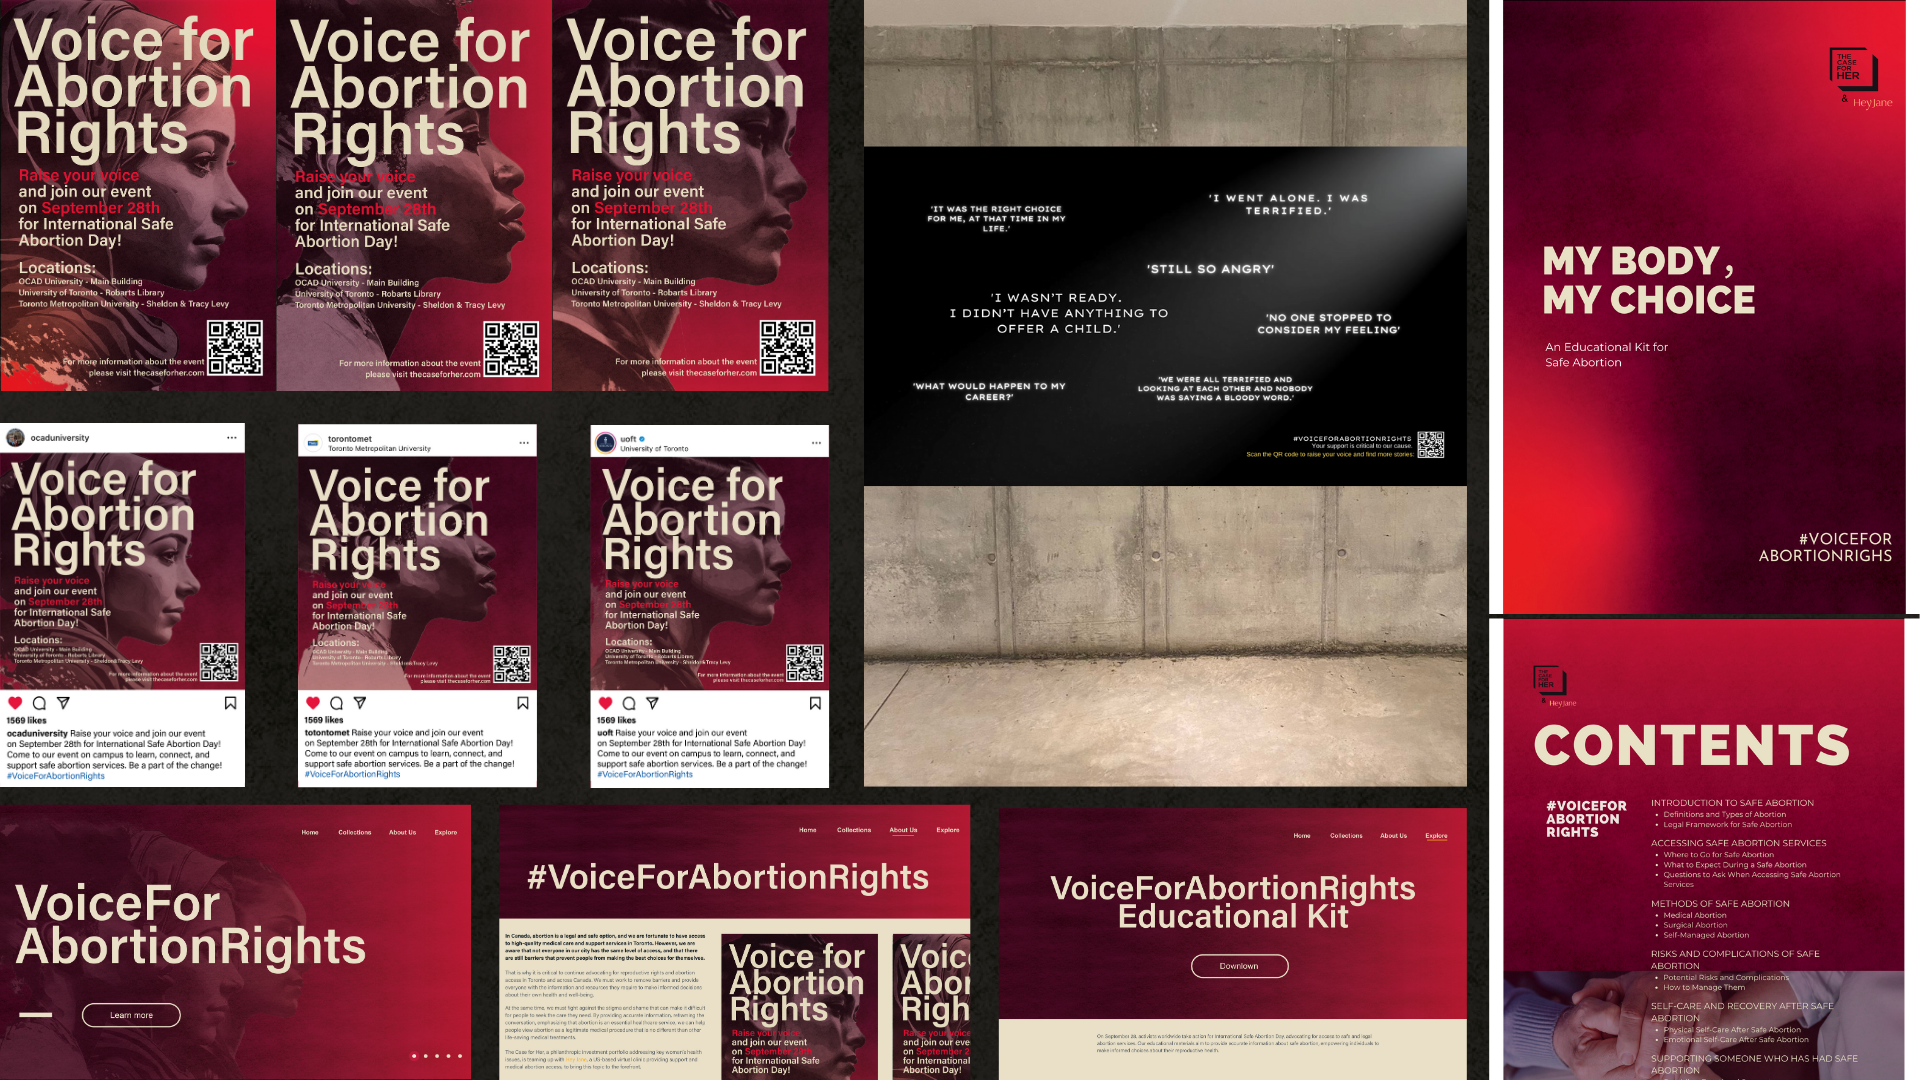 #VoiceforAbortionRights